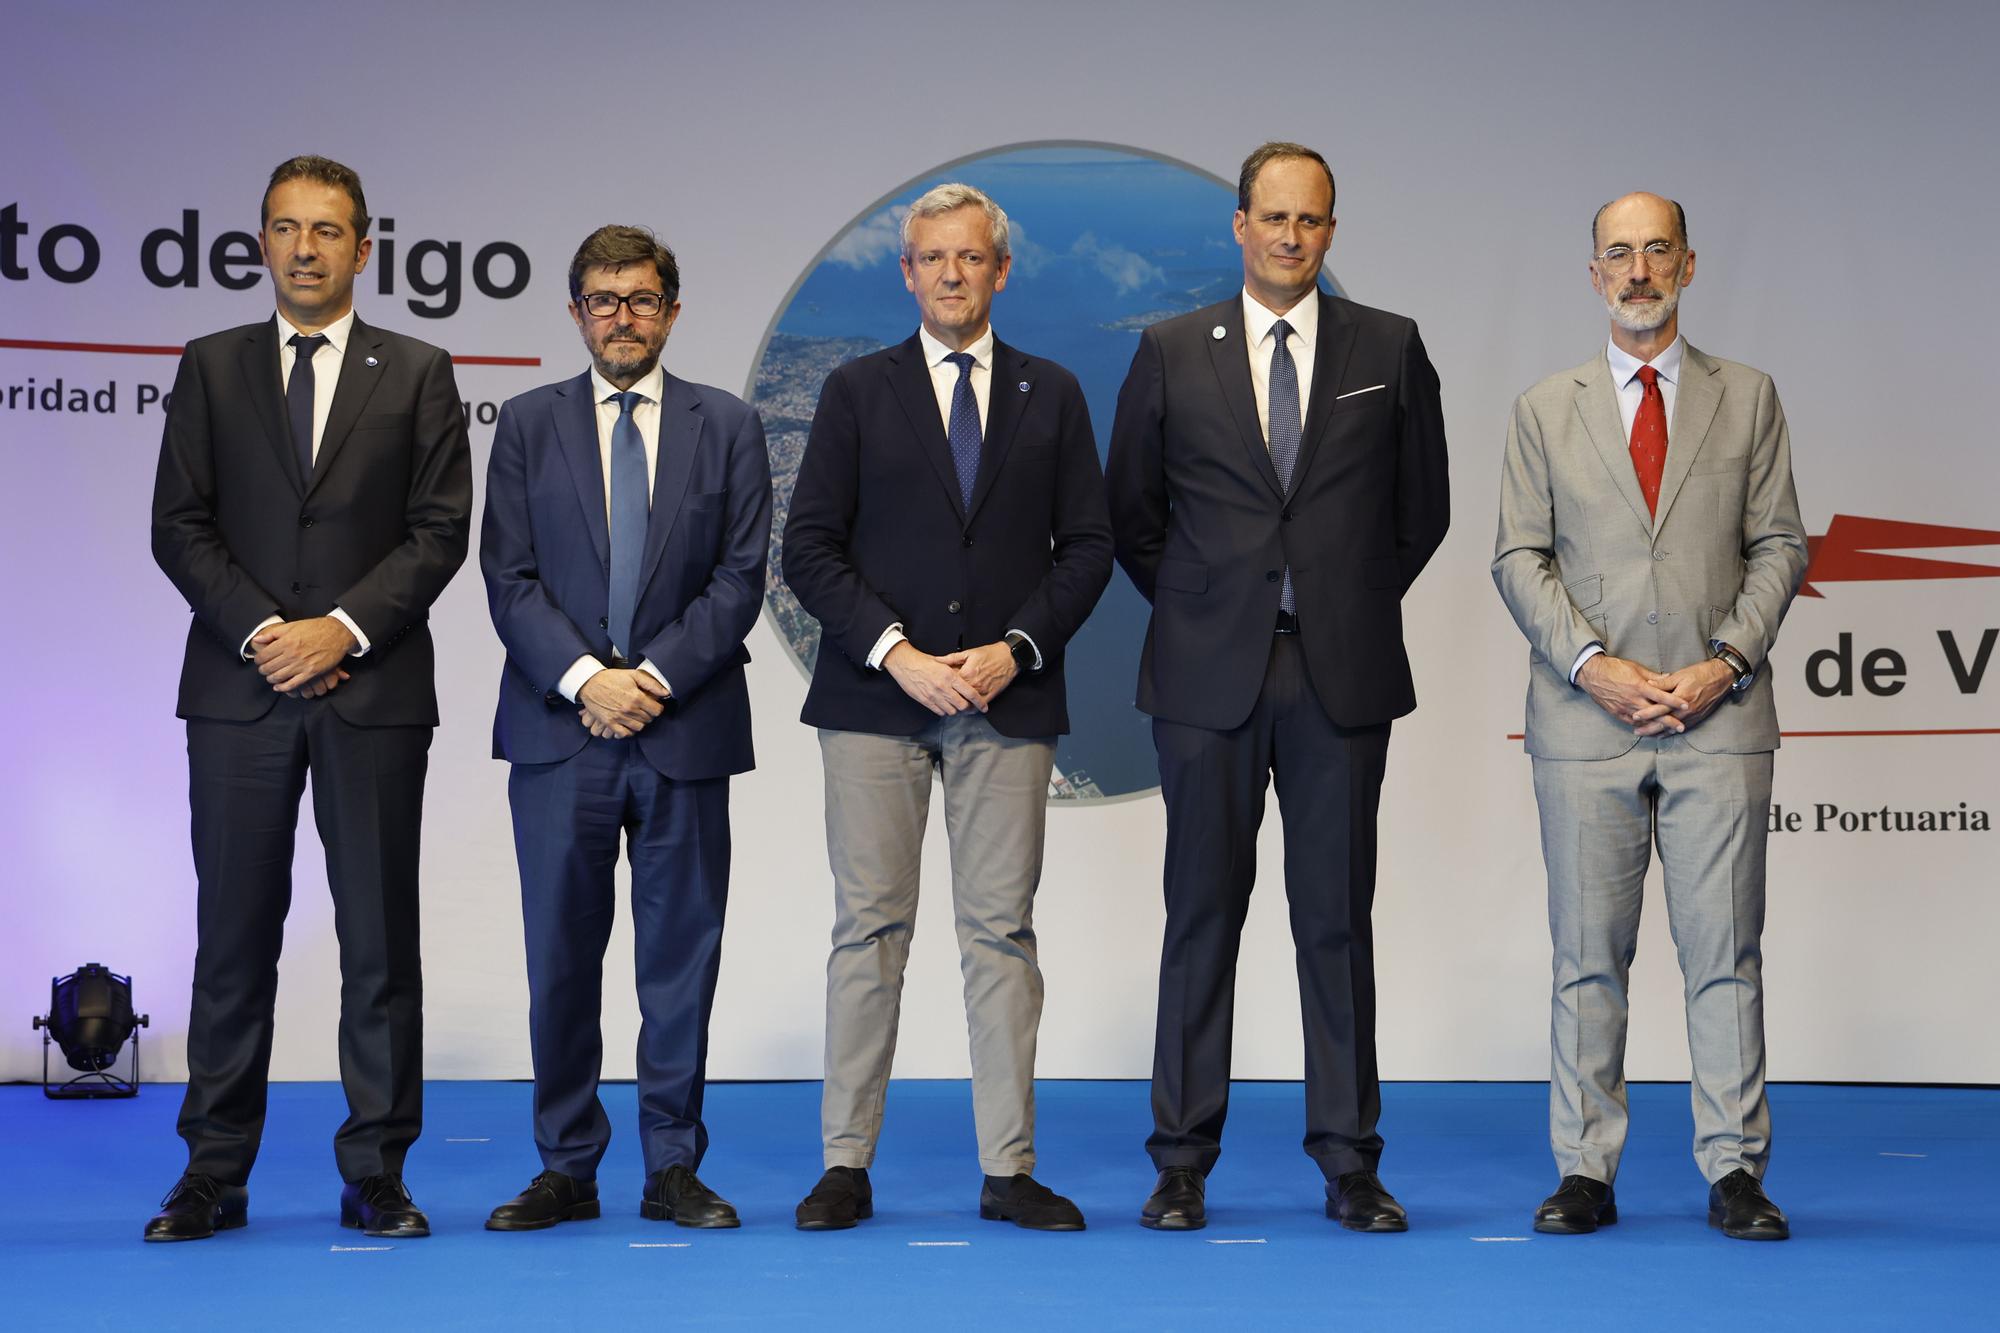 Carlos Botana toma posesión como presidente del Puerto de Vigo